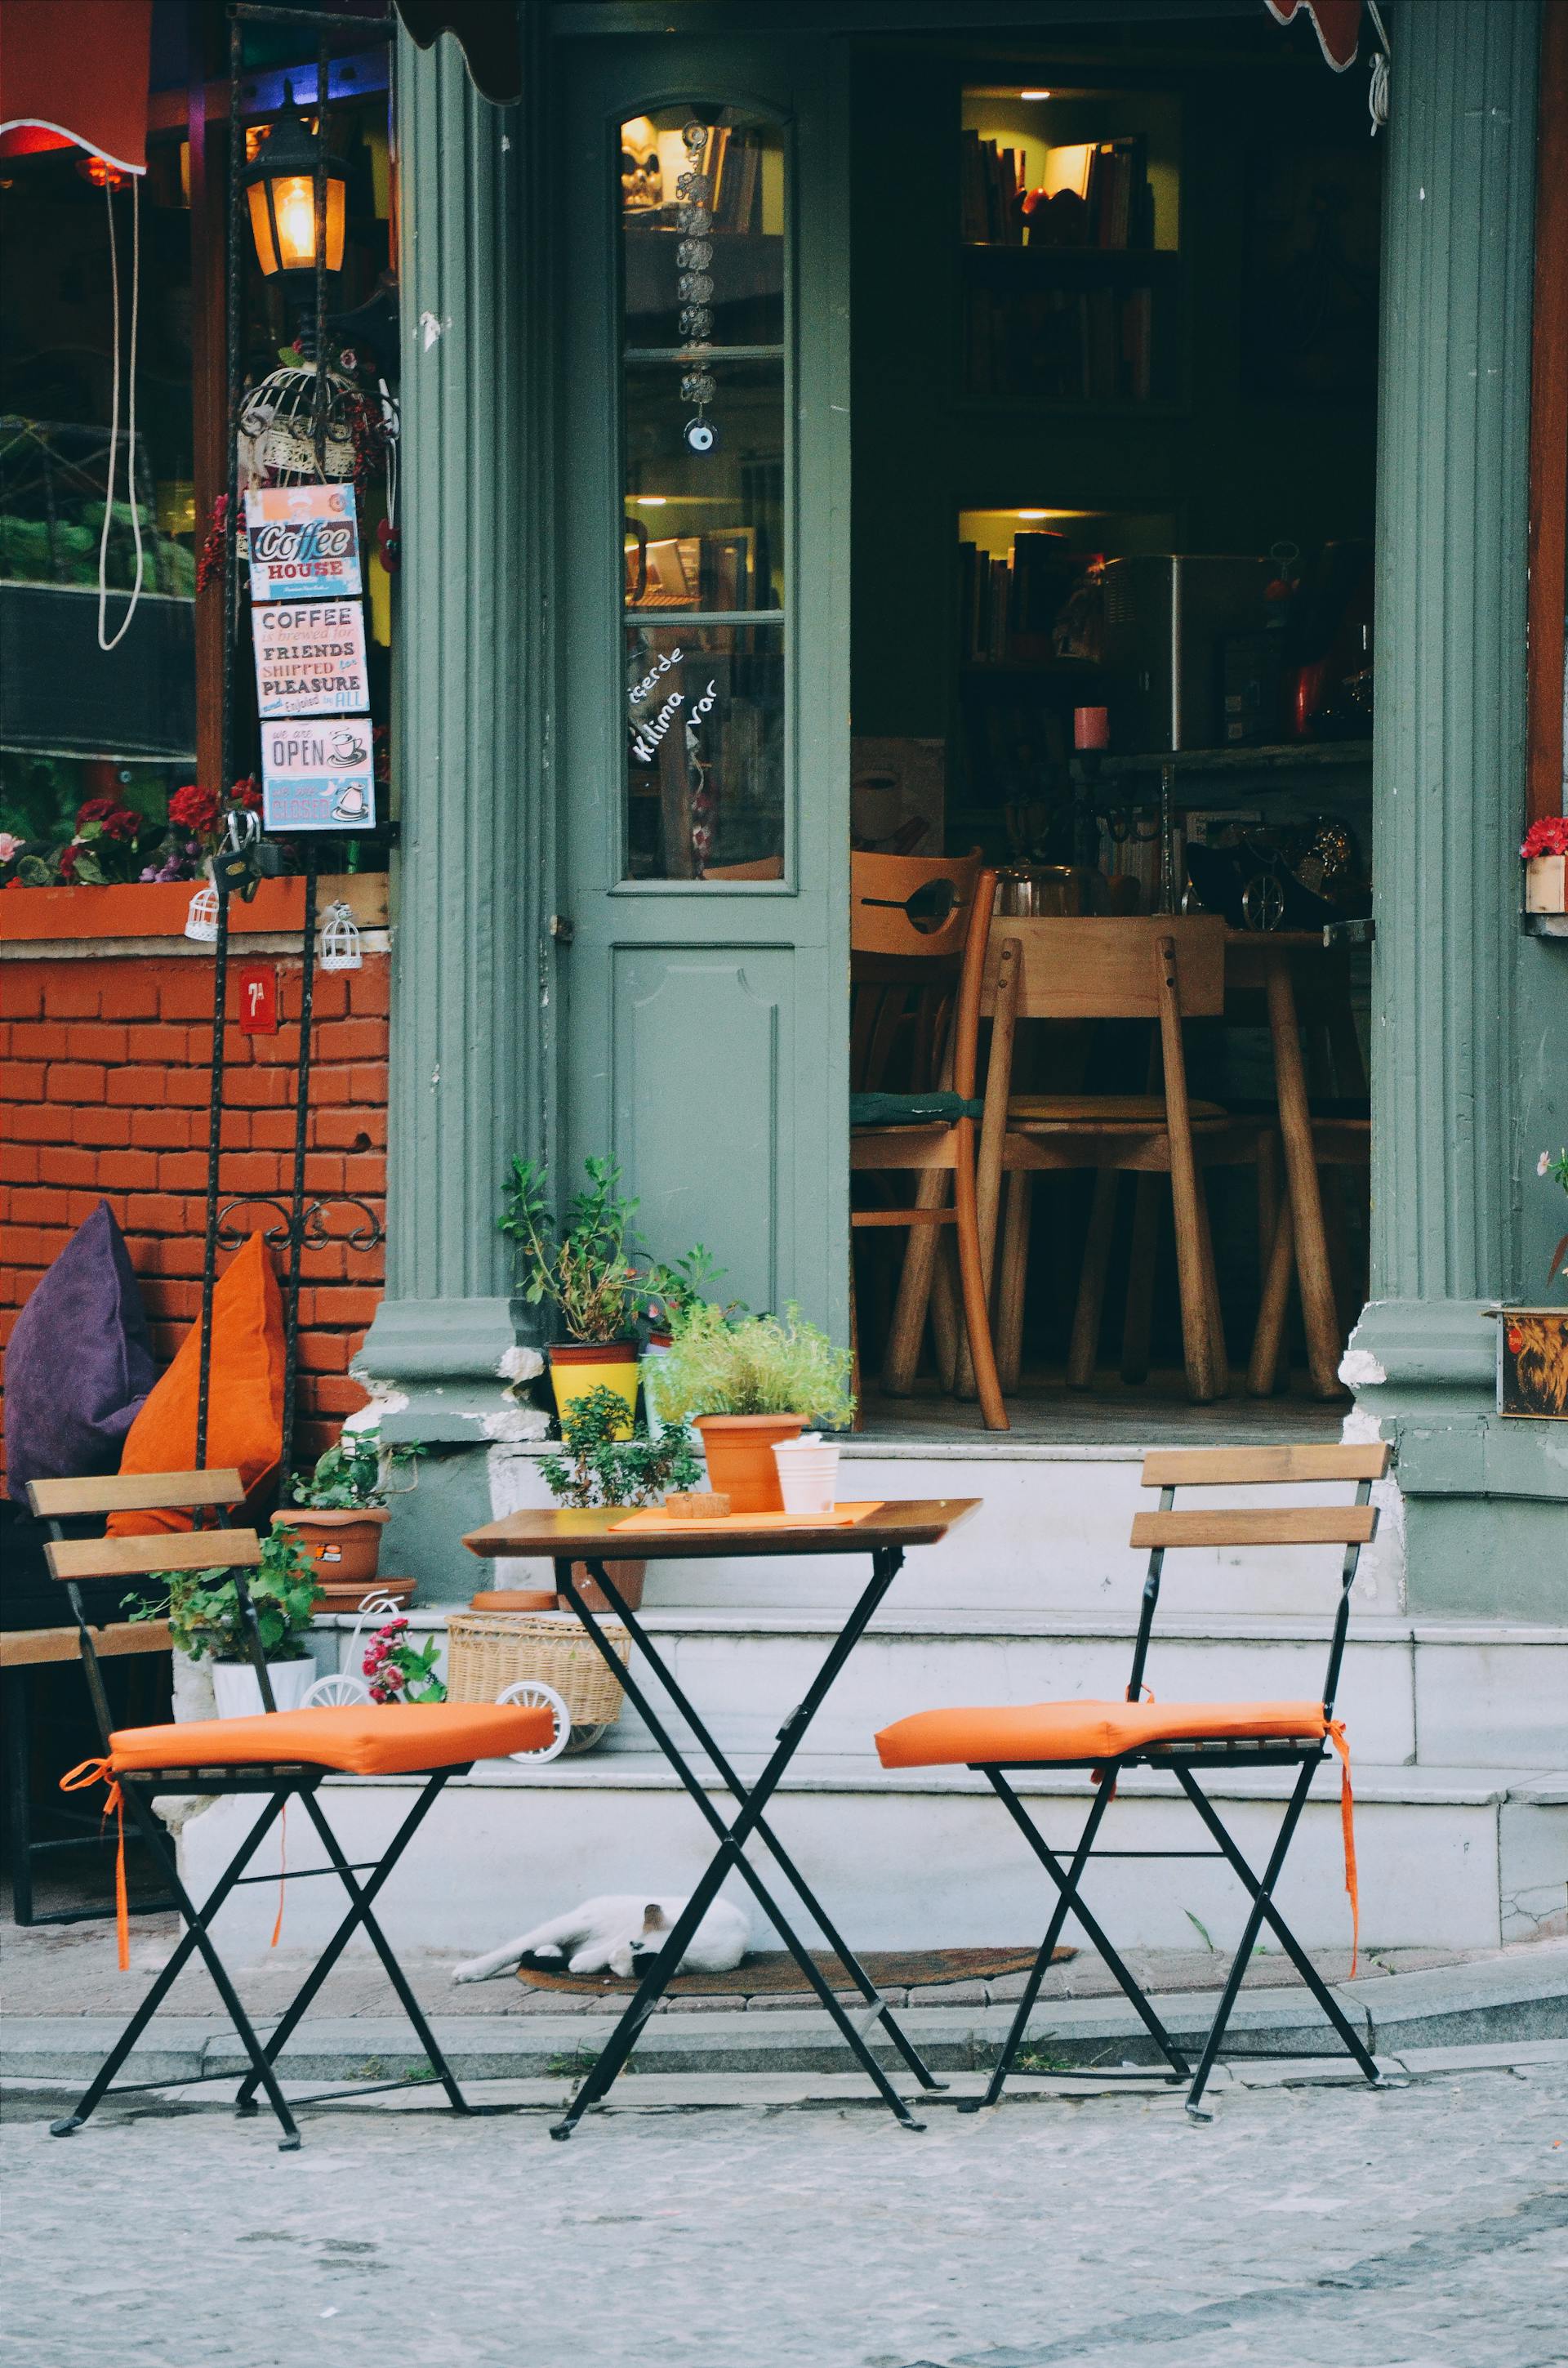 Un ensemble de terrasse marron et orange en trois parties à l'extérieur d'un café | Source : Pexels